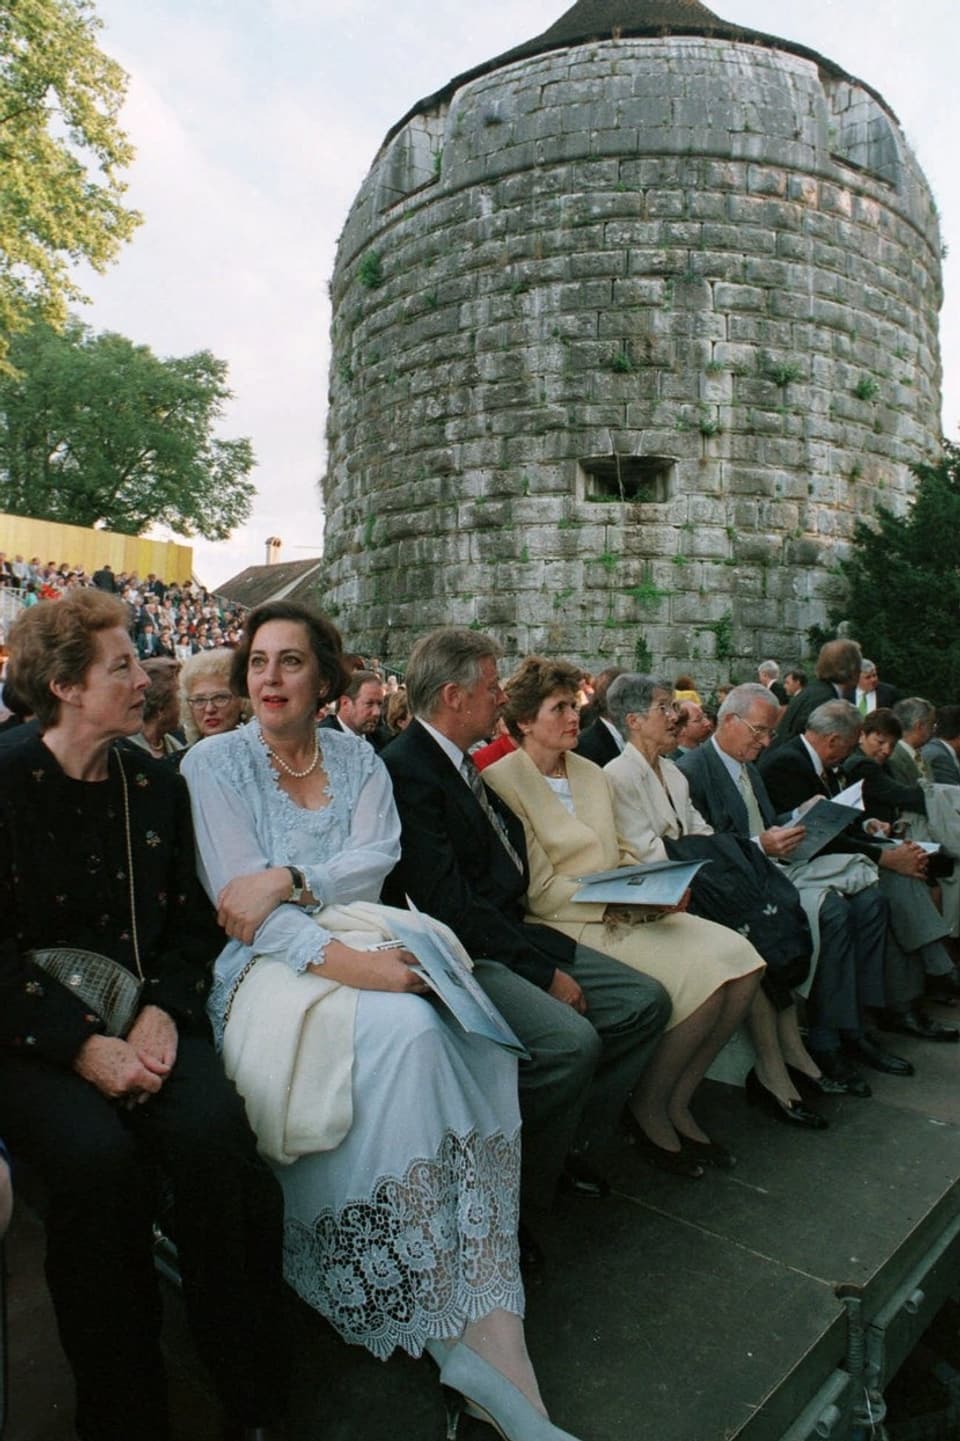 Opern-Zuschauer vor historischem Turm